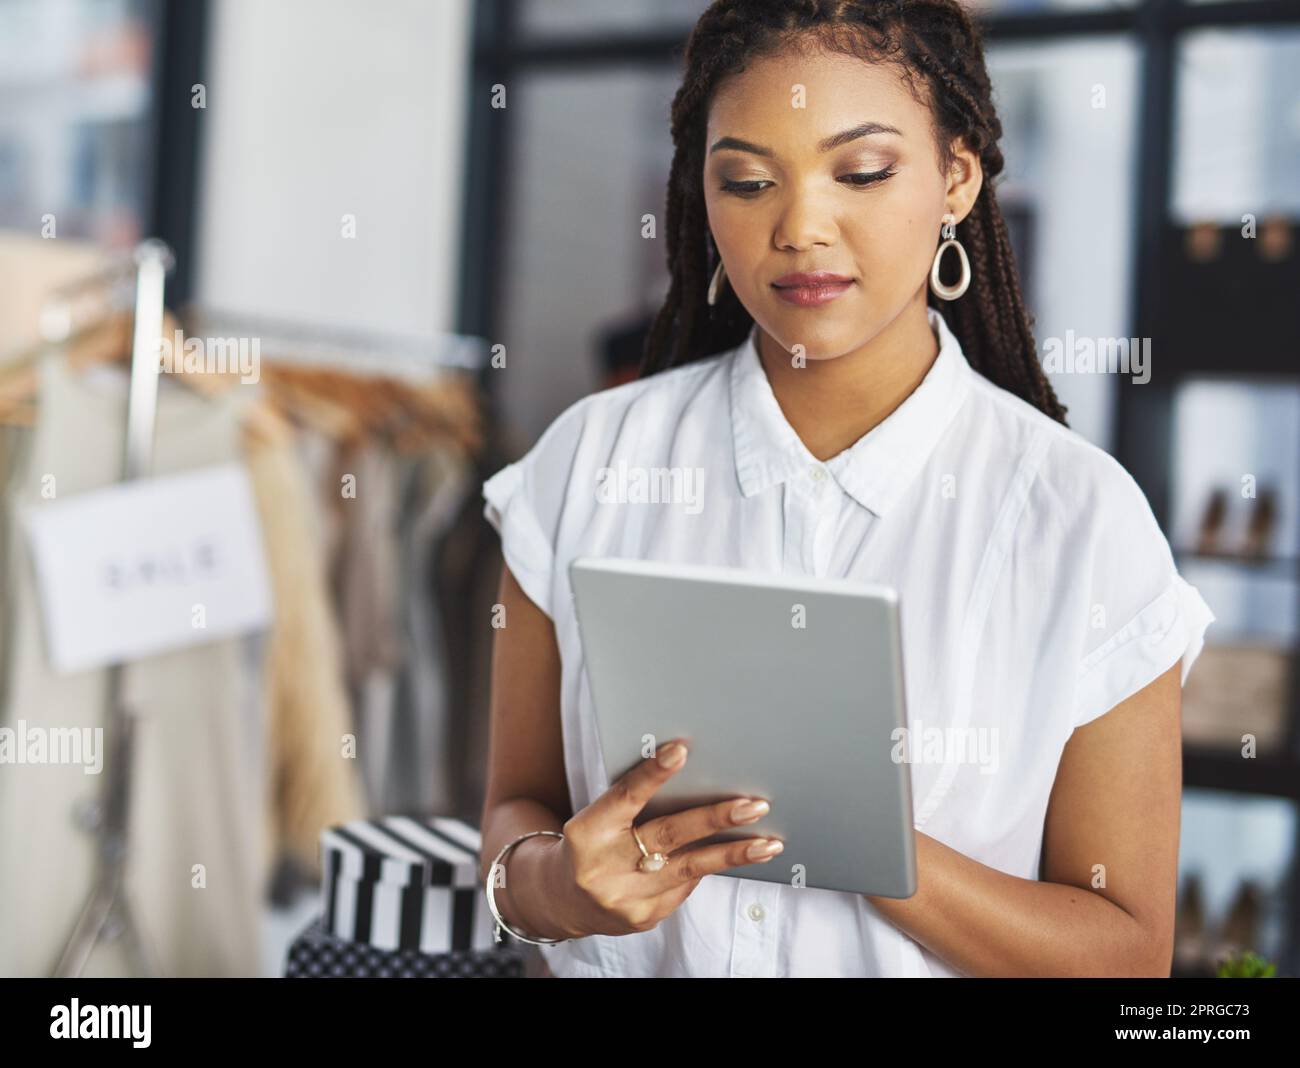 Online-Shopping hält unser Geschäft offen 247. Eine junge Geschäftsbesitzerin benutzt ihr Tablet, während sie in ihrem Geschäft steht. Stockfoto